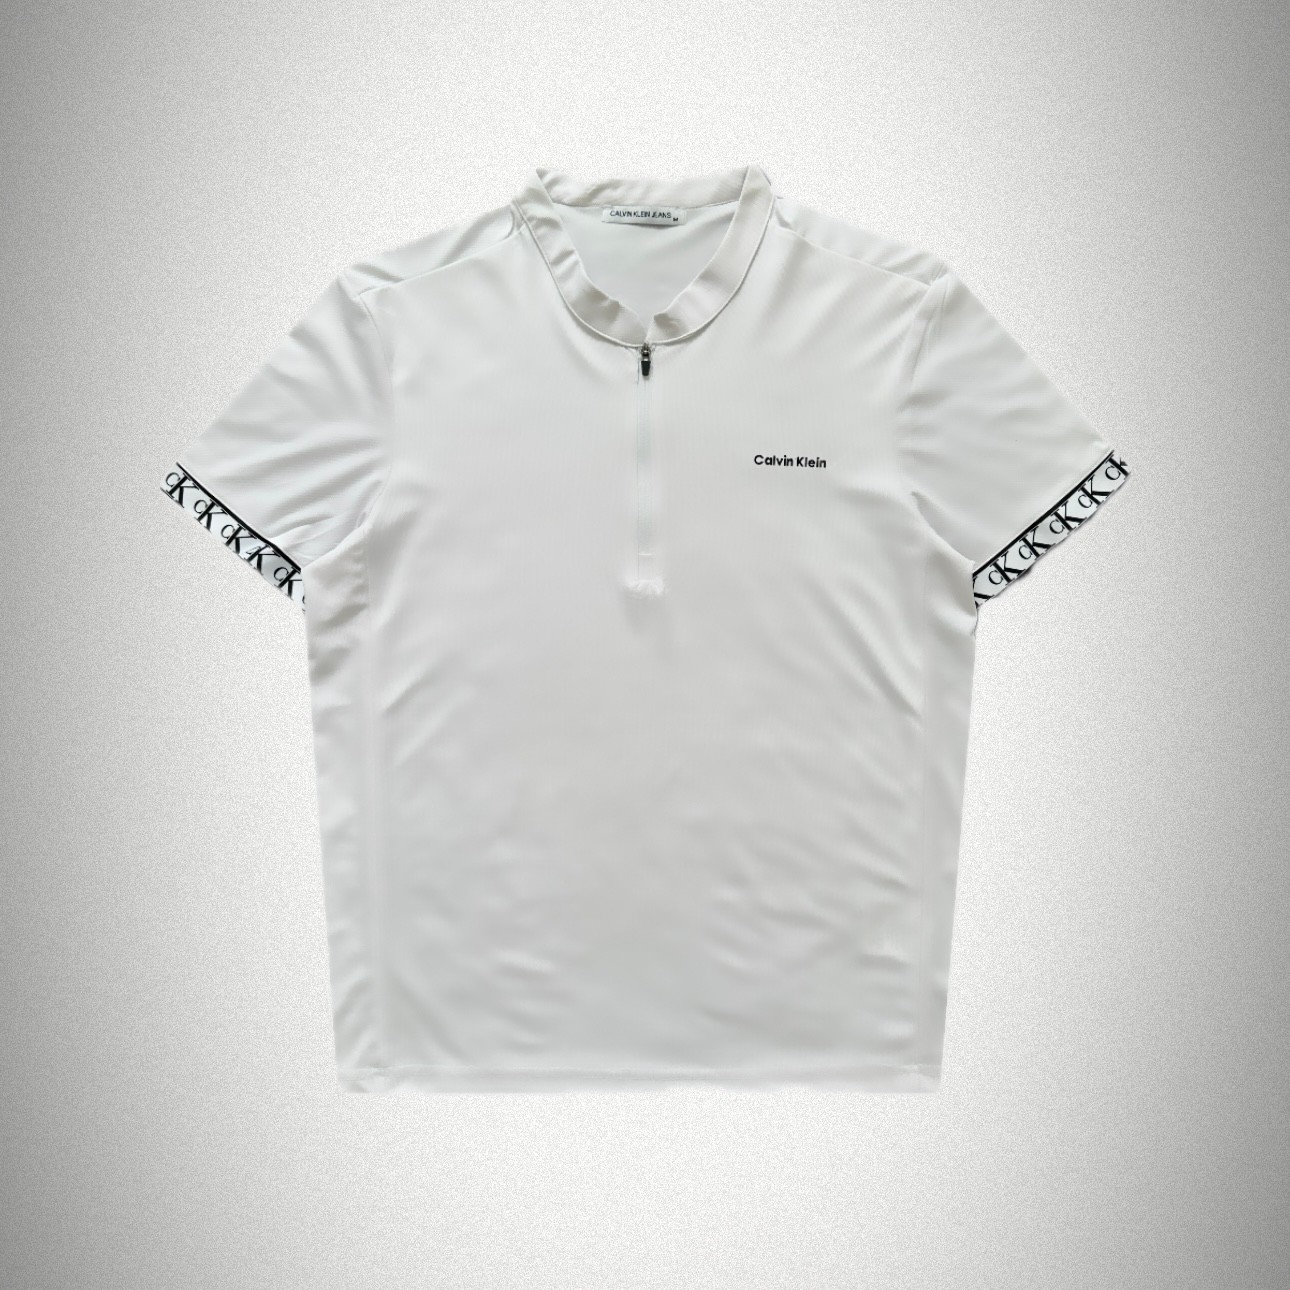 CK Fermuarlı Yakalı Seamless T-Shirt - Beyaz